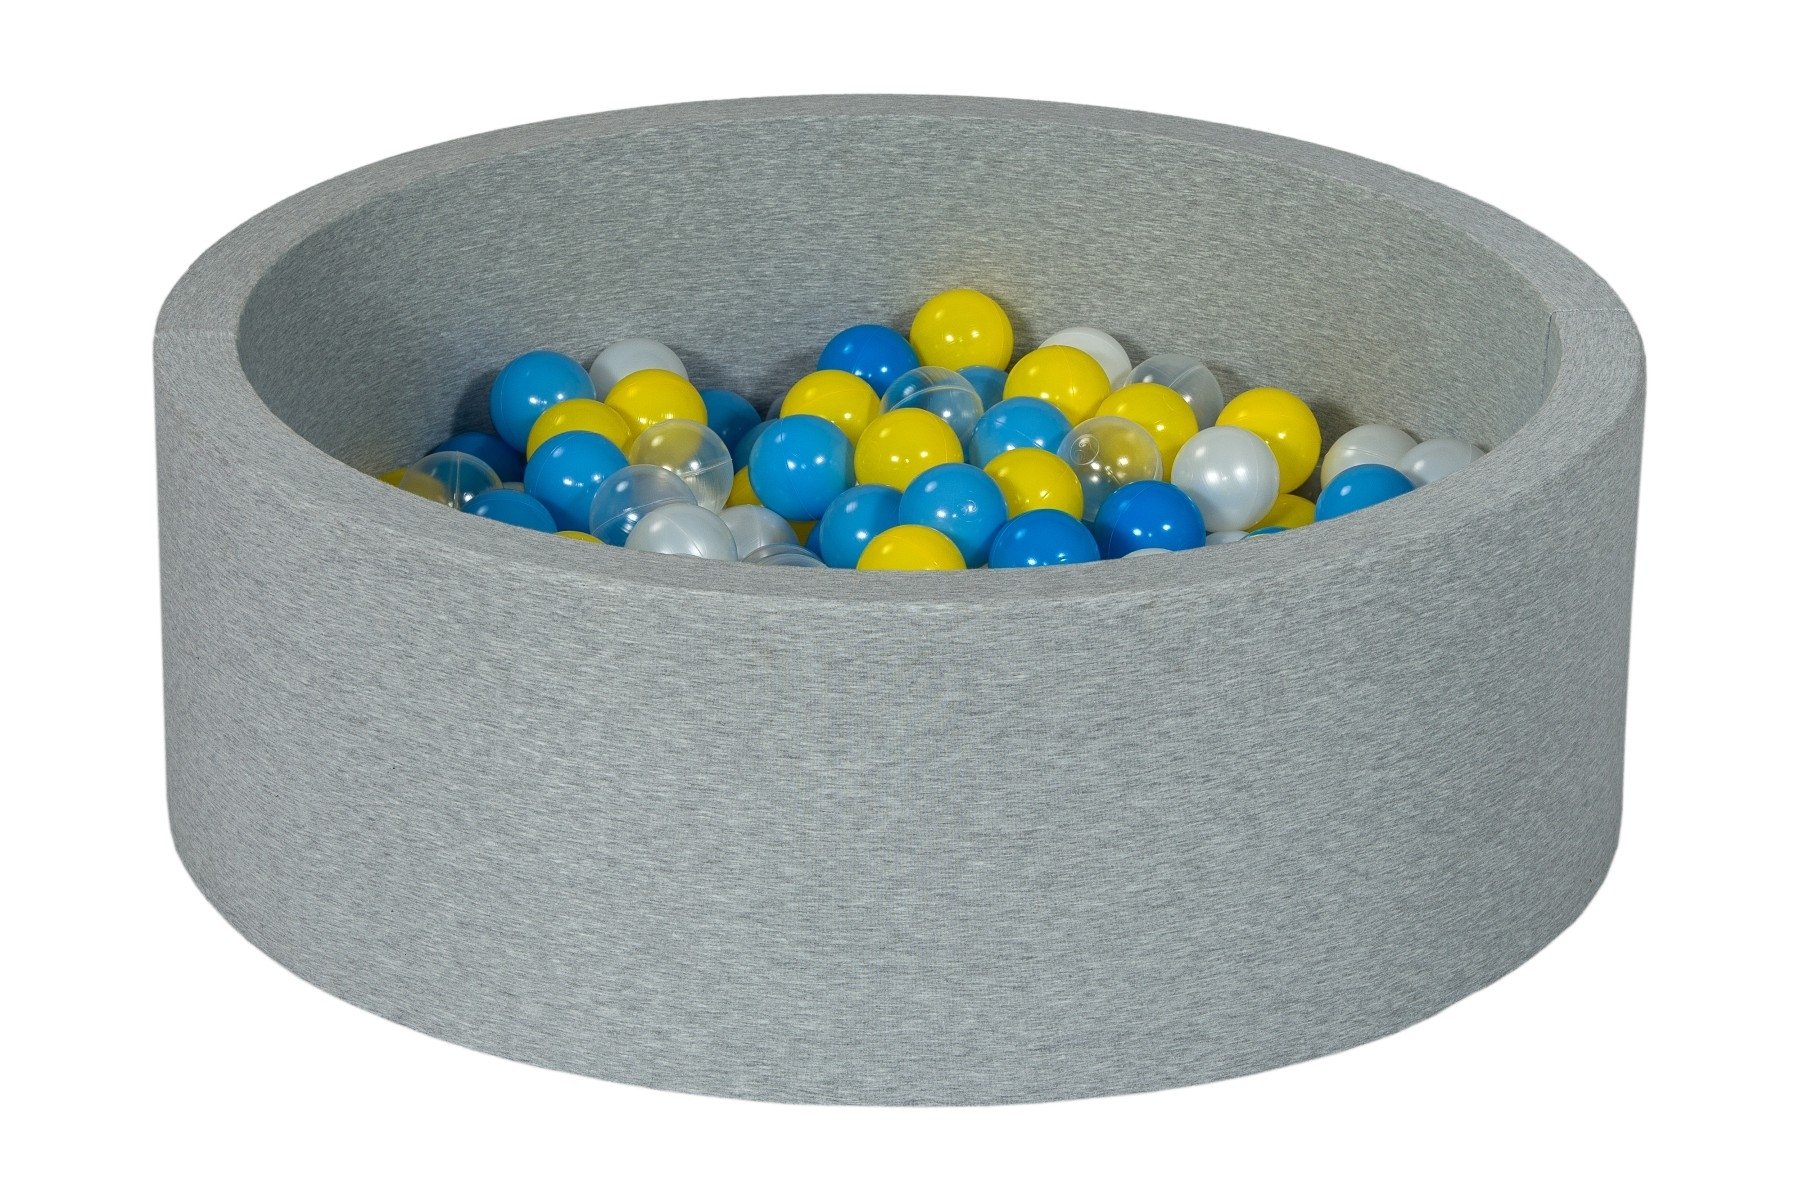 Piscine à balles pour bébé avec 200 balles 90x30cm grise balle jaune